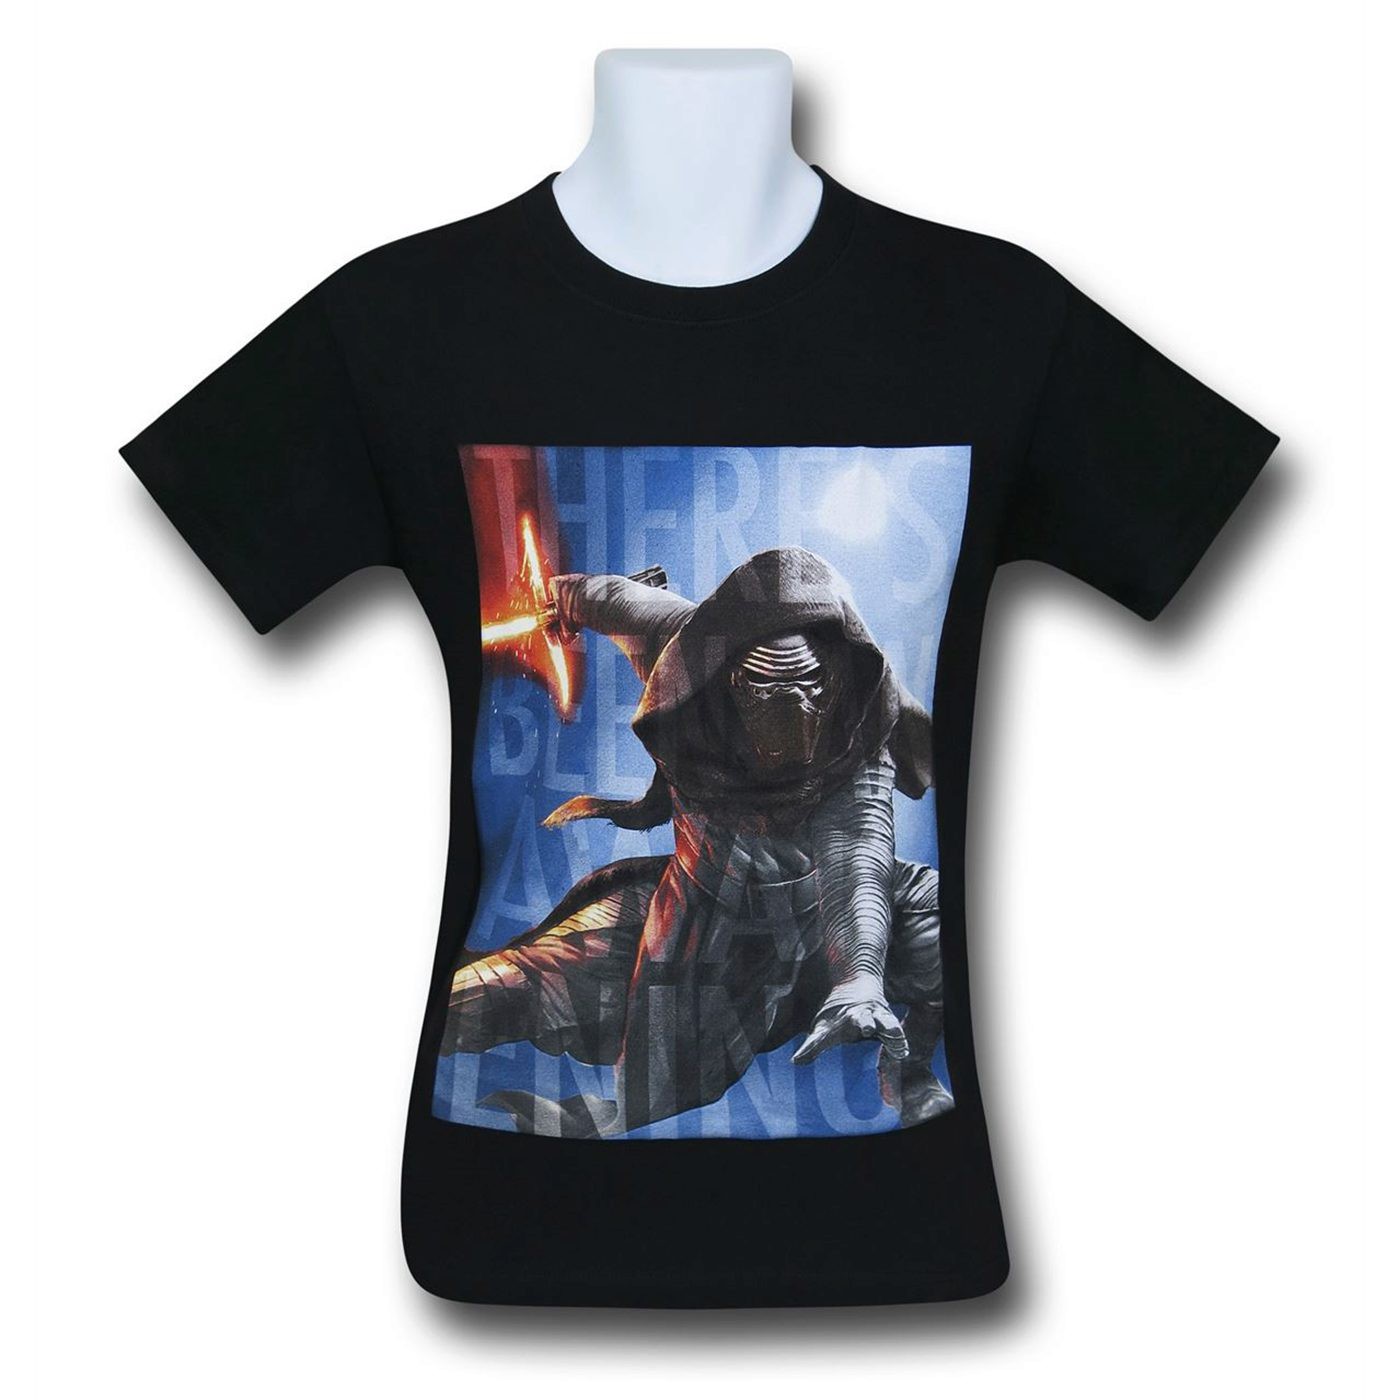 Star Wars Force Awakens Awakening T-Shirt